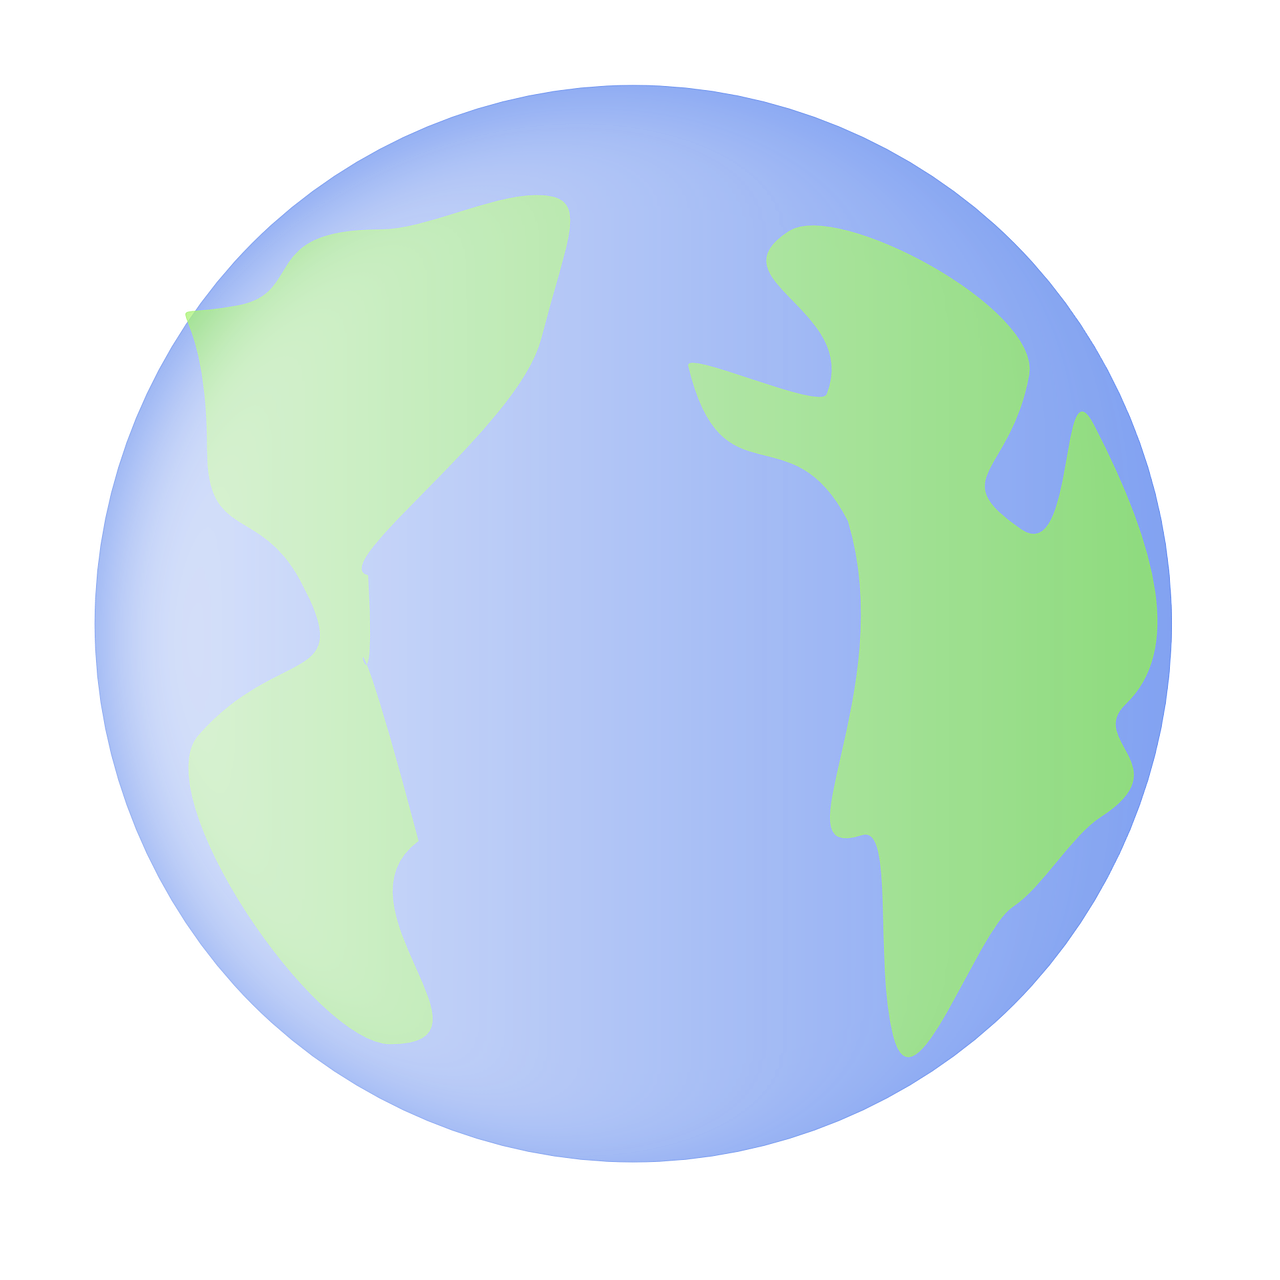 Žemė, Planeta, Pasaulis, Gaublys, Geografija, Erdvė, Žemėlapis, Sfera, Atmosfera, Aplinka